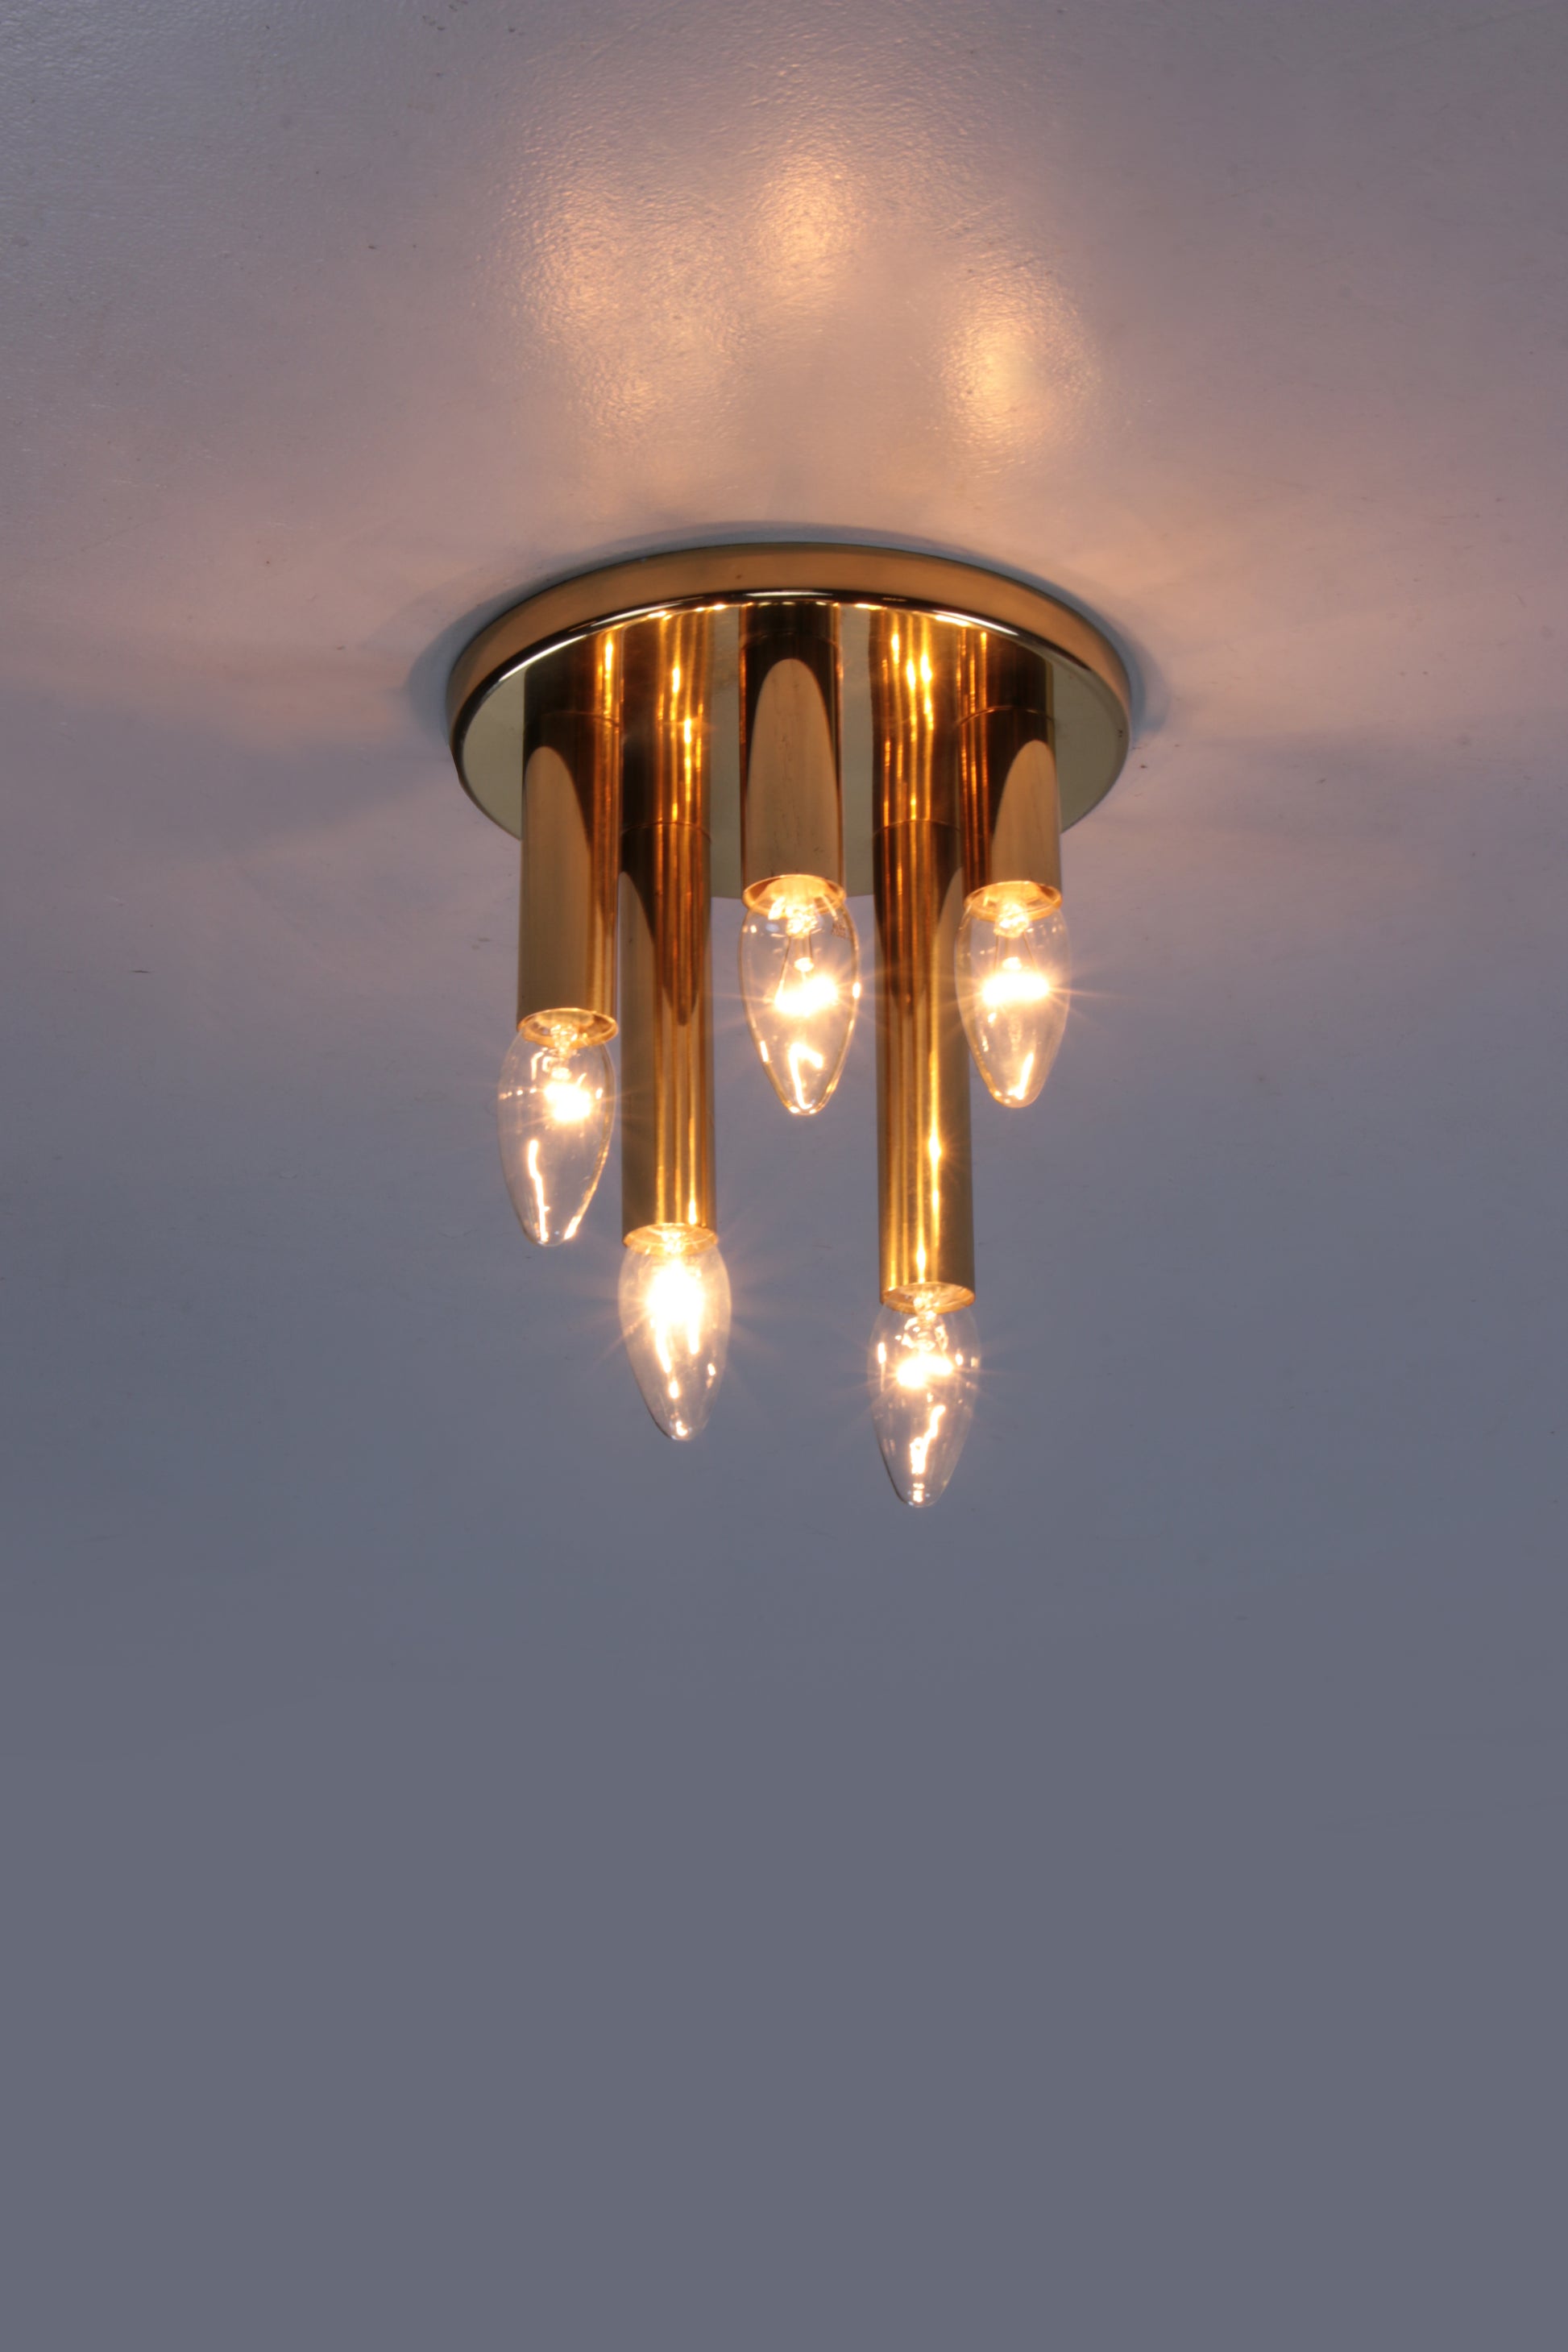 Plafondlamp van Sciolari gemaakt door Boulanger,1970 Belgie